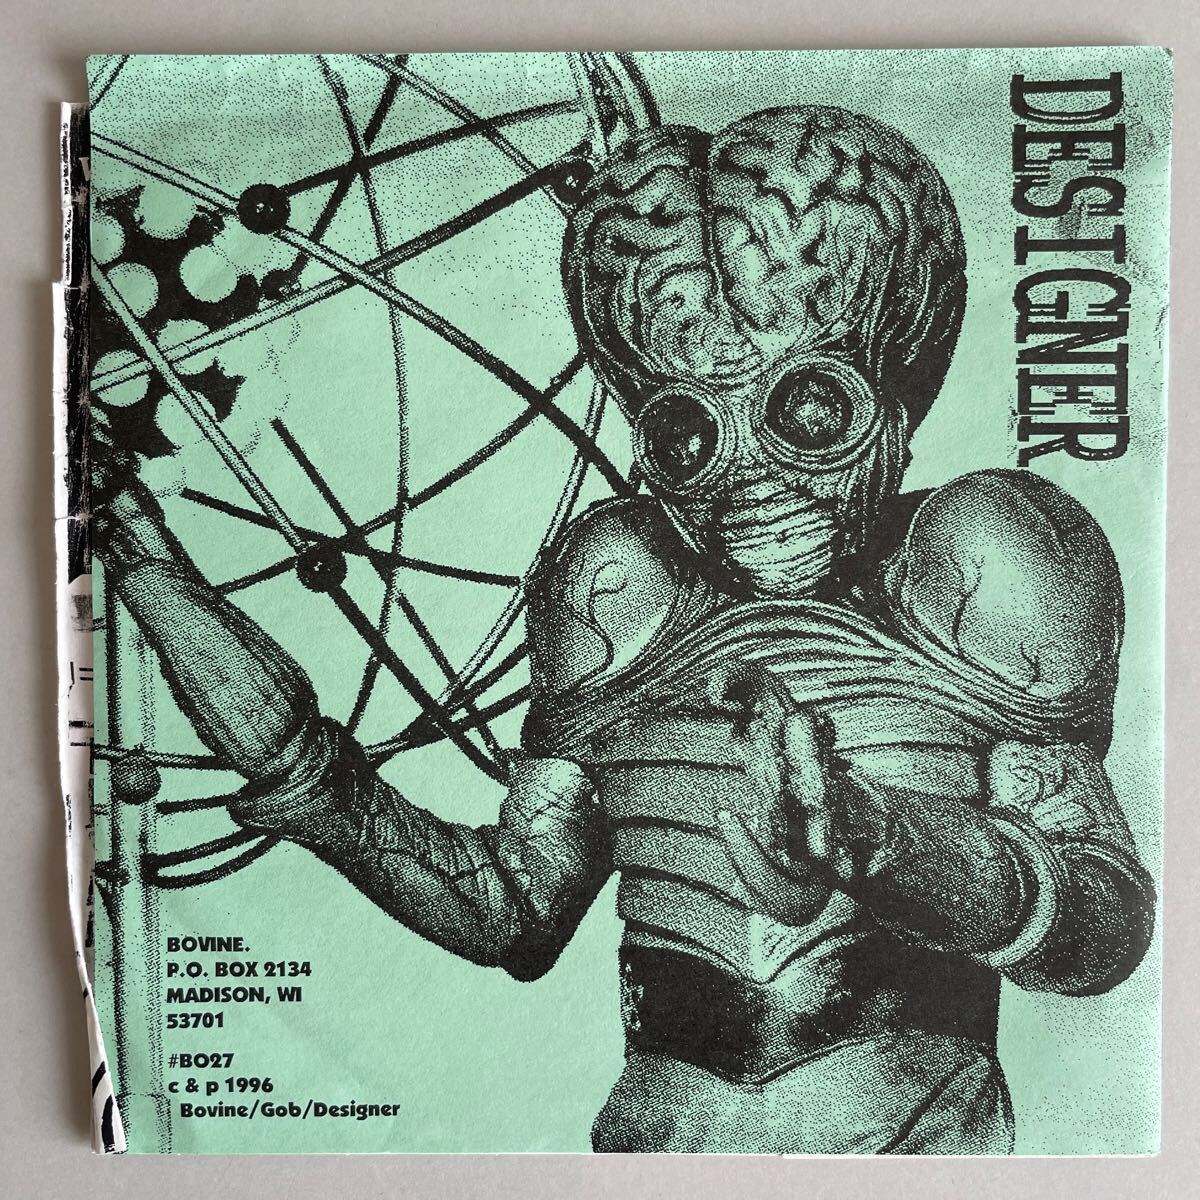 GOB / DESIGNER split 7”EP ノイズ パンク noise punk alternative _画像2